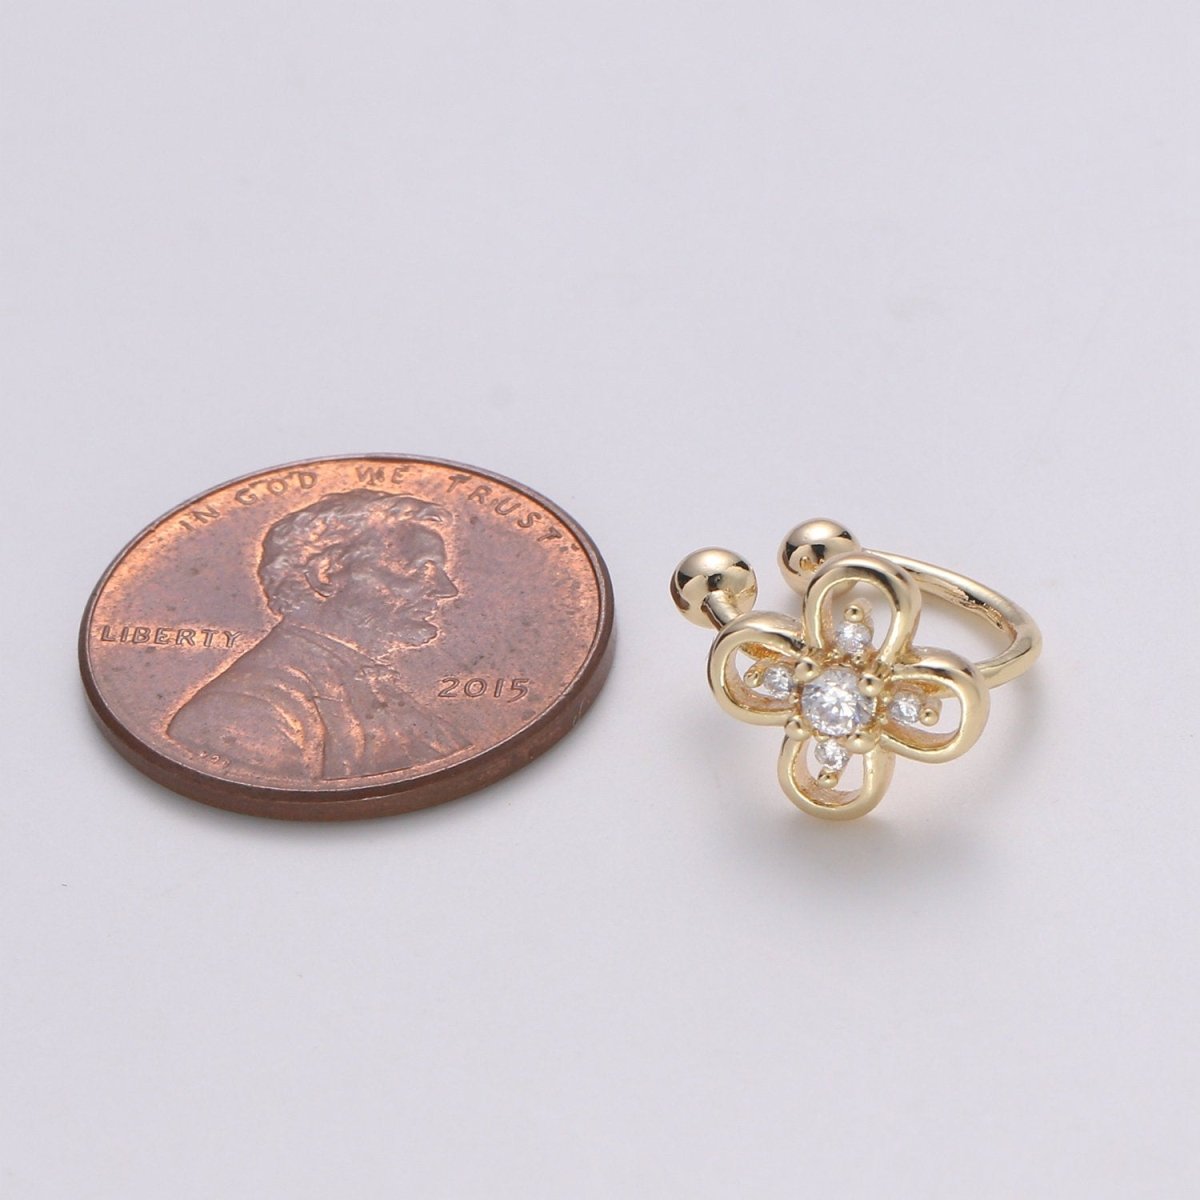 1x Dainty Flower Earcuff Gold Ear cuff cartilage earring no piercing, gold ear cuff, fake piercing, Clover earcuff, Floral ear cuff wrap, AI-082. - DLUXCA